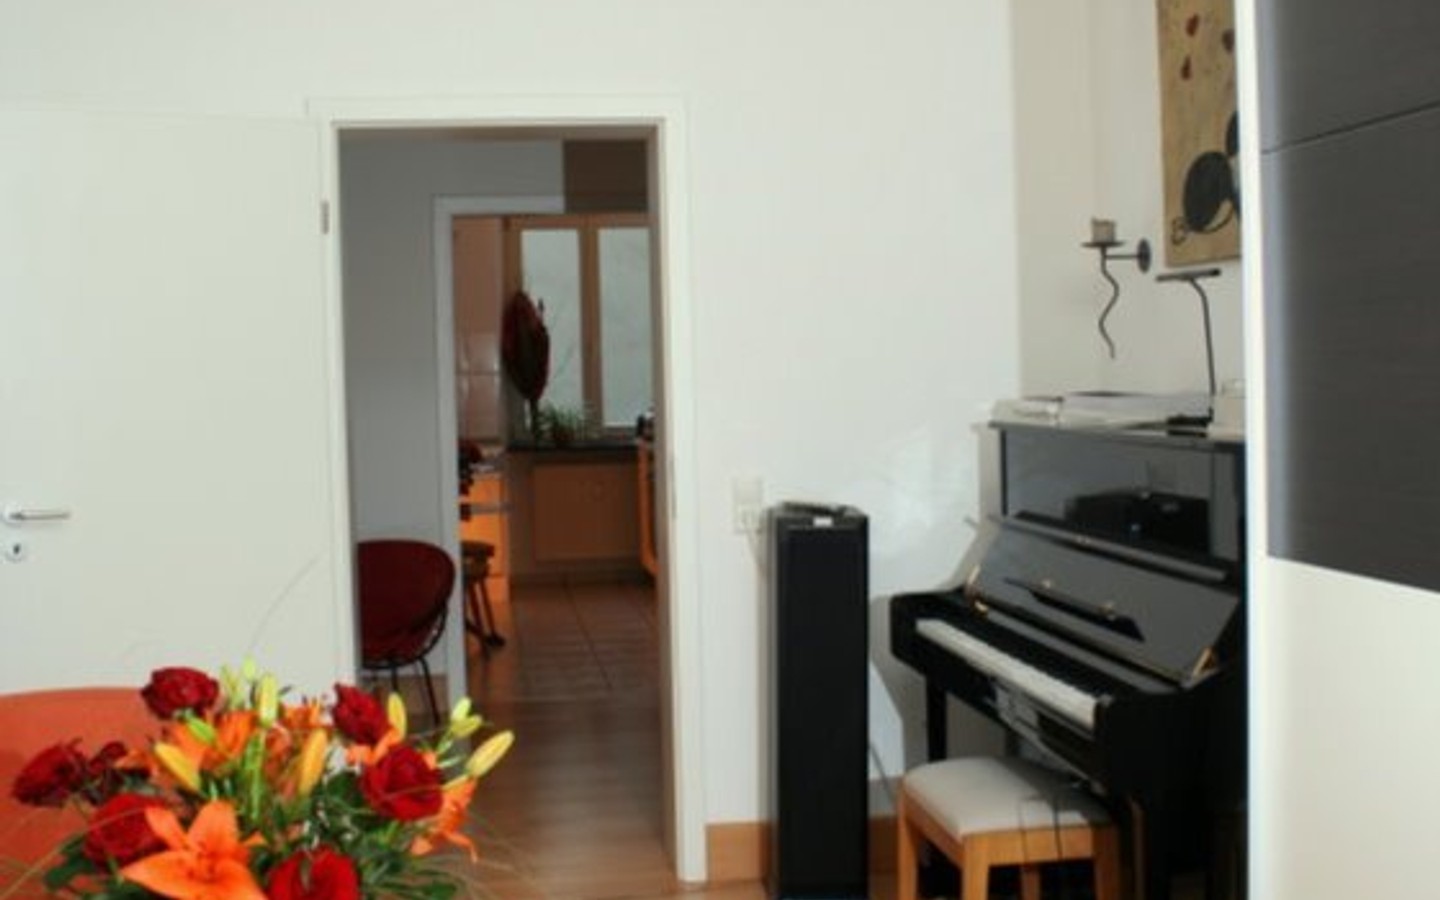 Wohnzimmer - Sehr ansprechende Vierzimmerwohnung in einem Stadthaus in zentralster Lage von Heidelberg